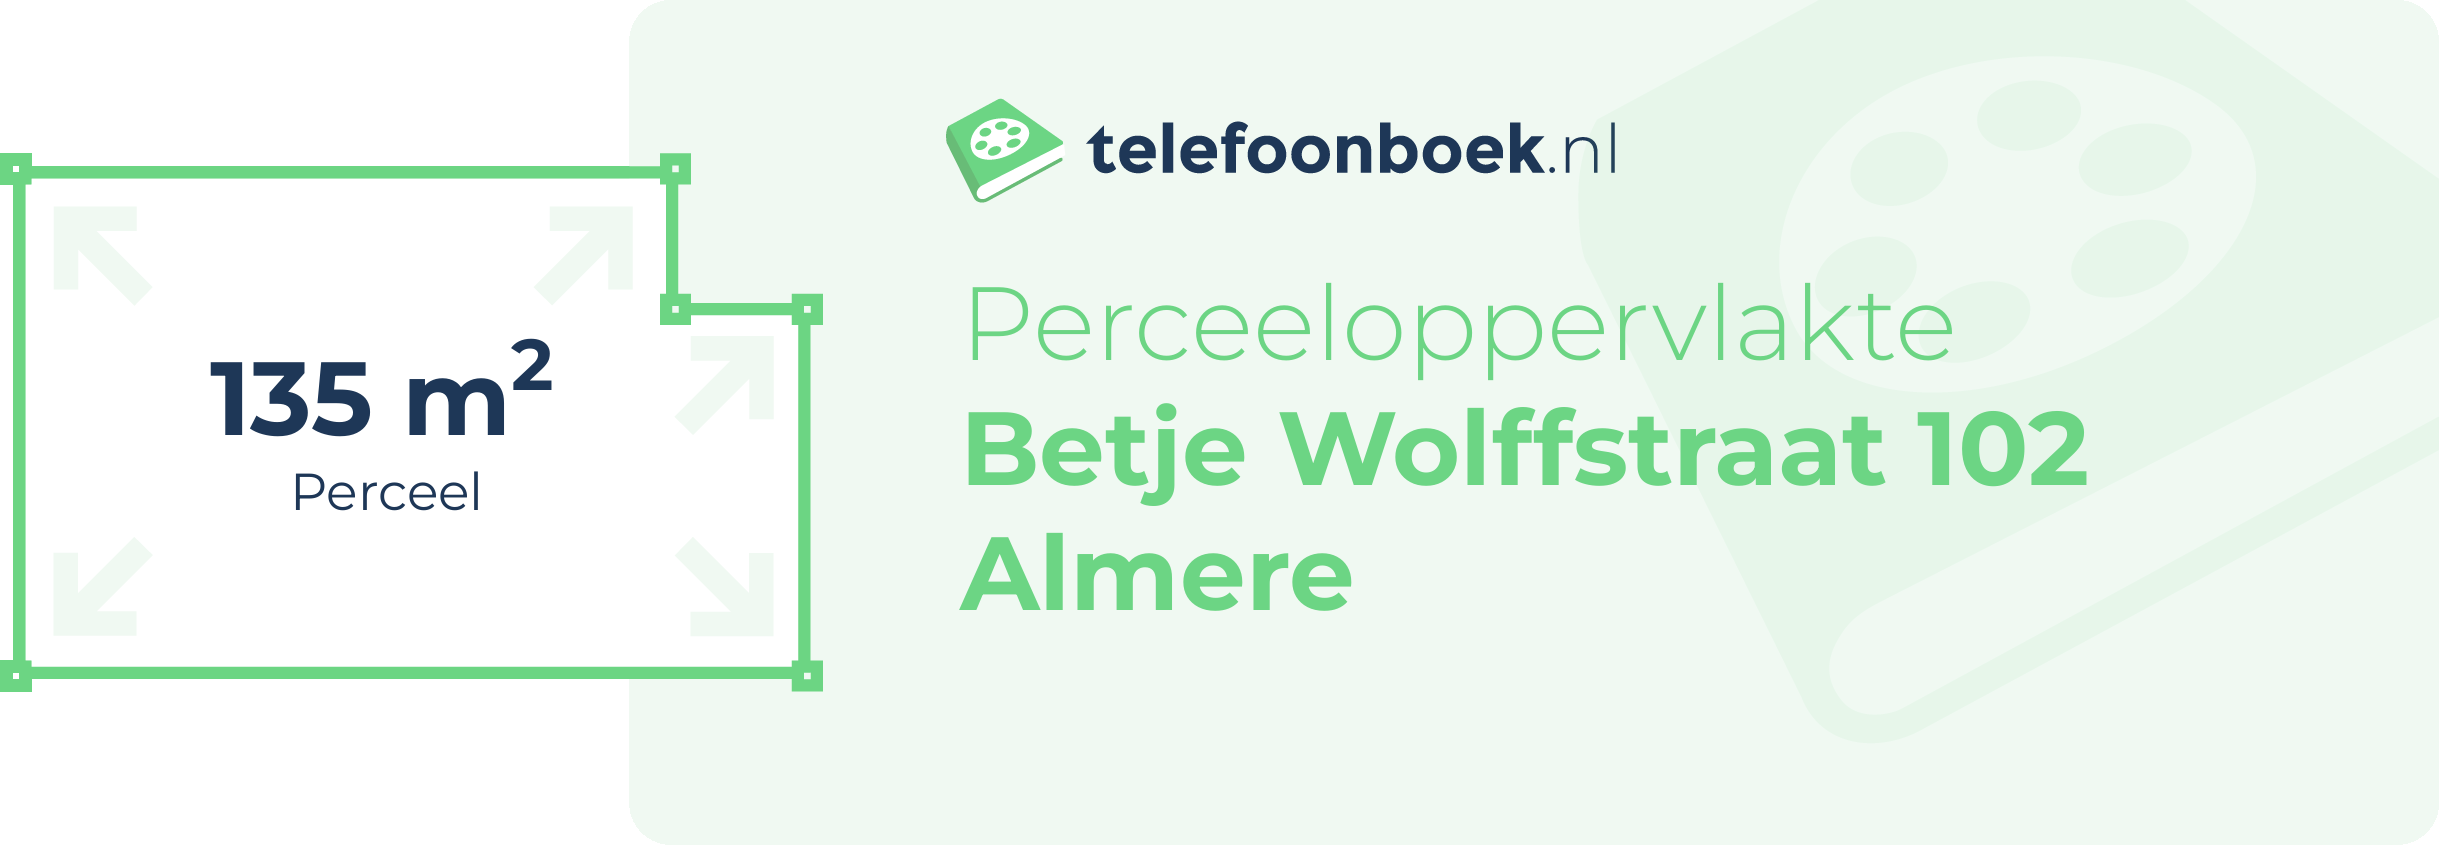 Perceeloppervlakte Betje Wolffstraat 102 Almere